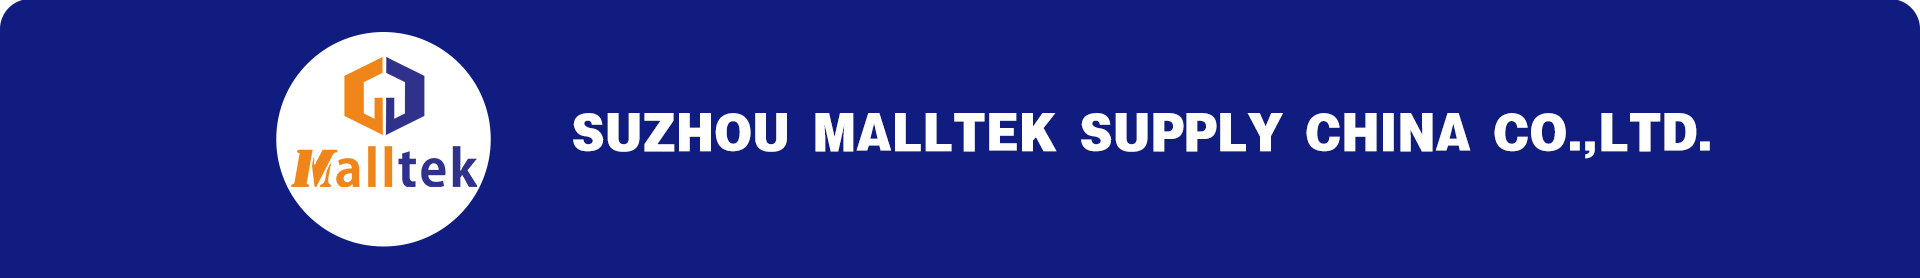 MALLTEK shop solution,supermarket equipment,shoppi - Suzhou